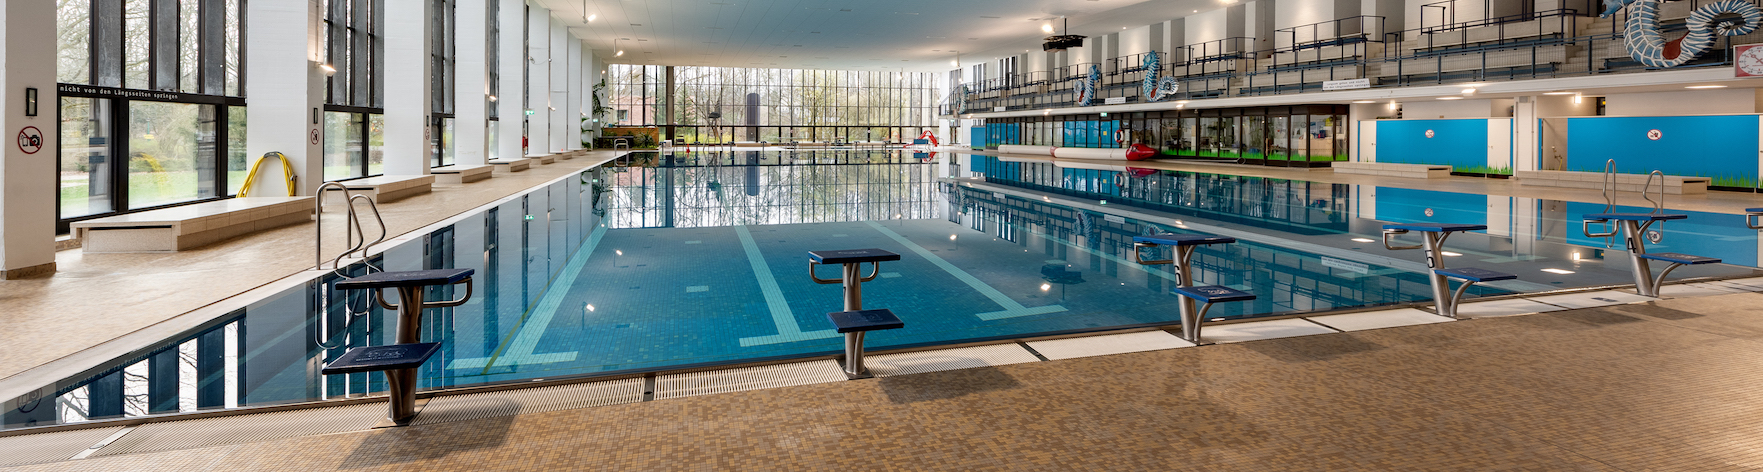 Indoor Swimming Pool in the FEZ Berlin